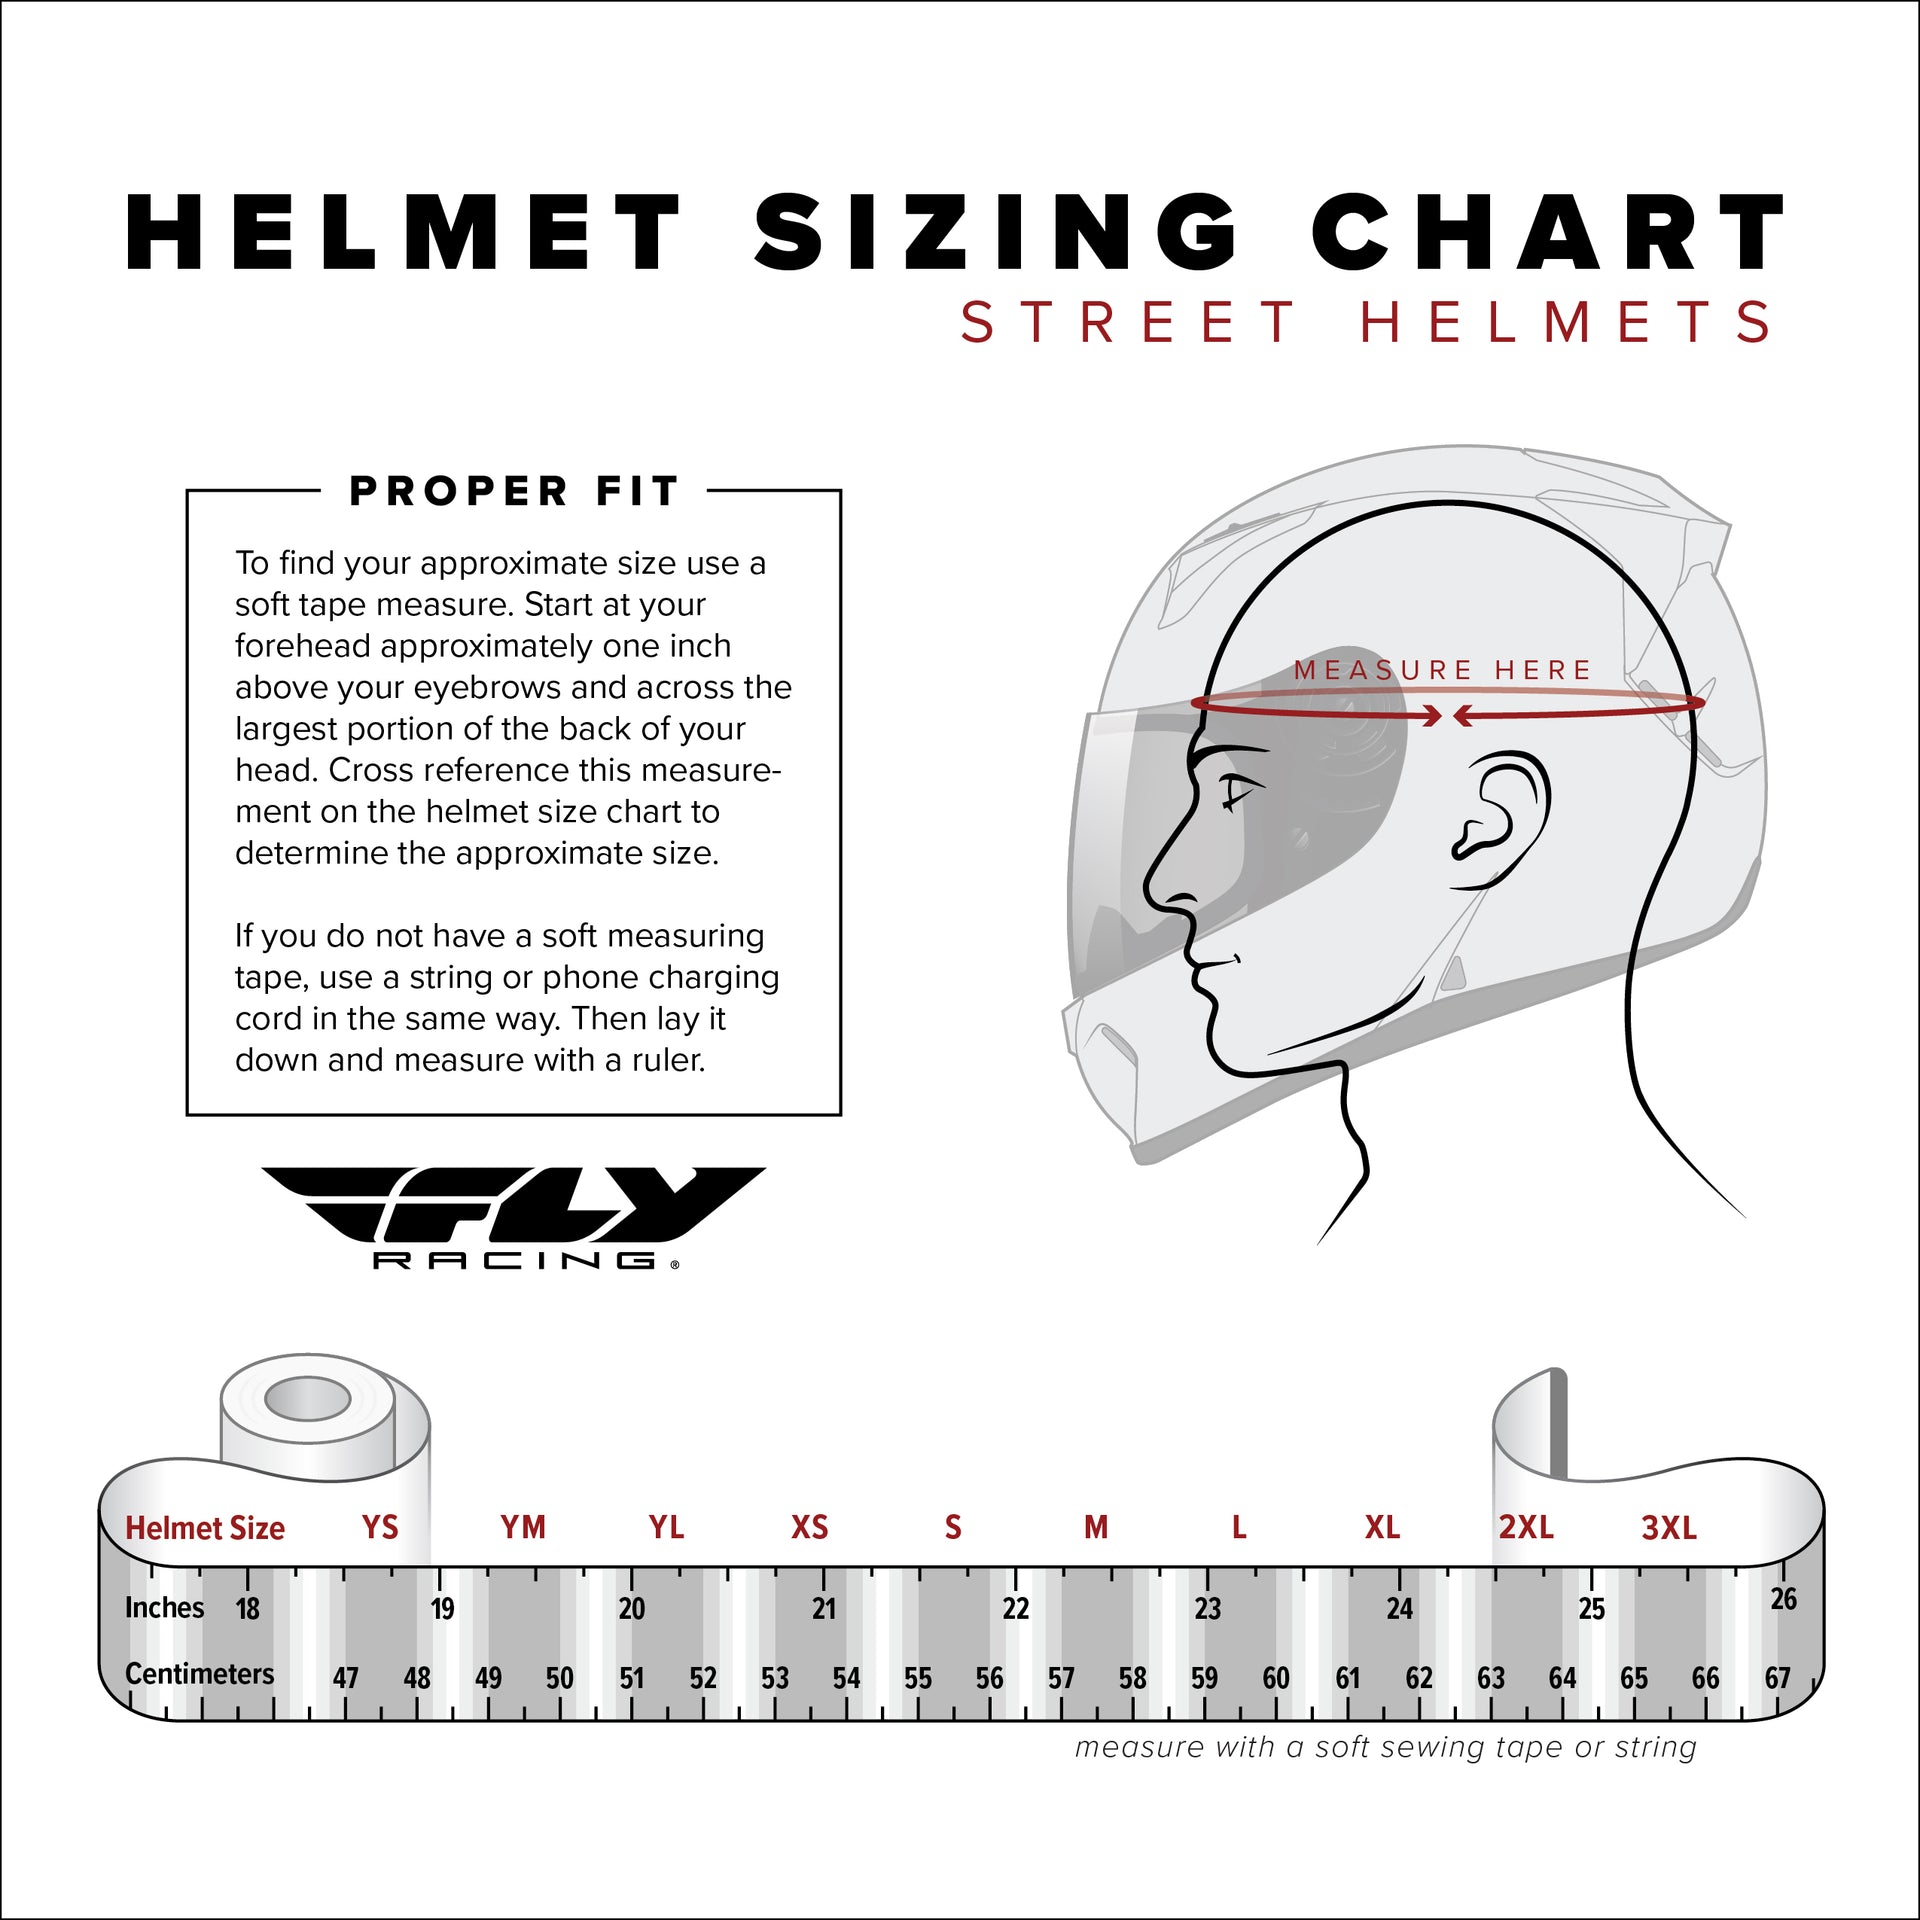 Fly Racing - Trekker Solid Helmet